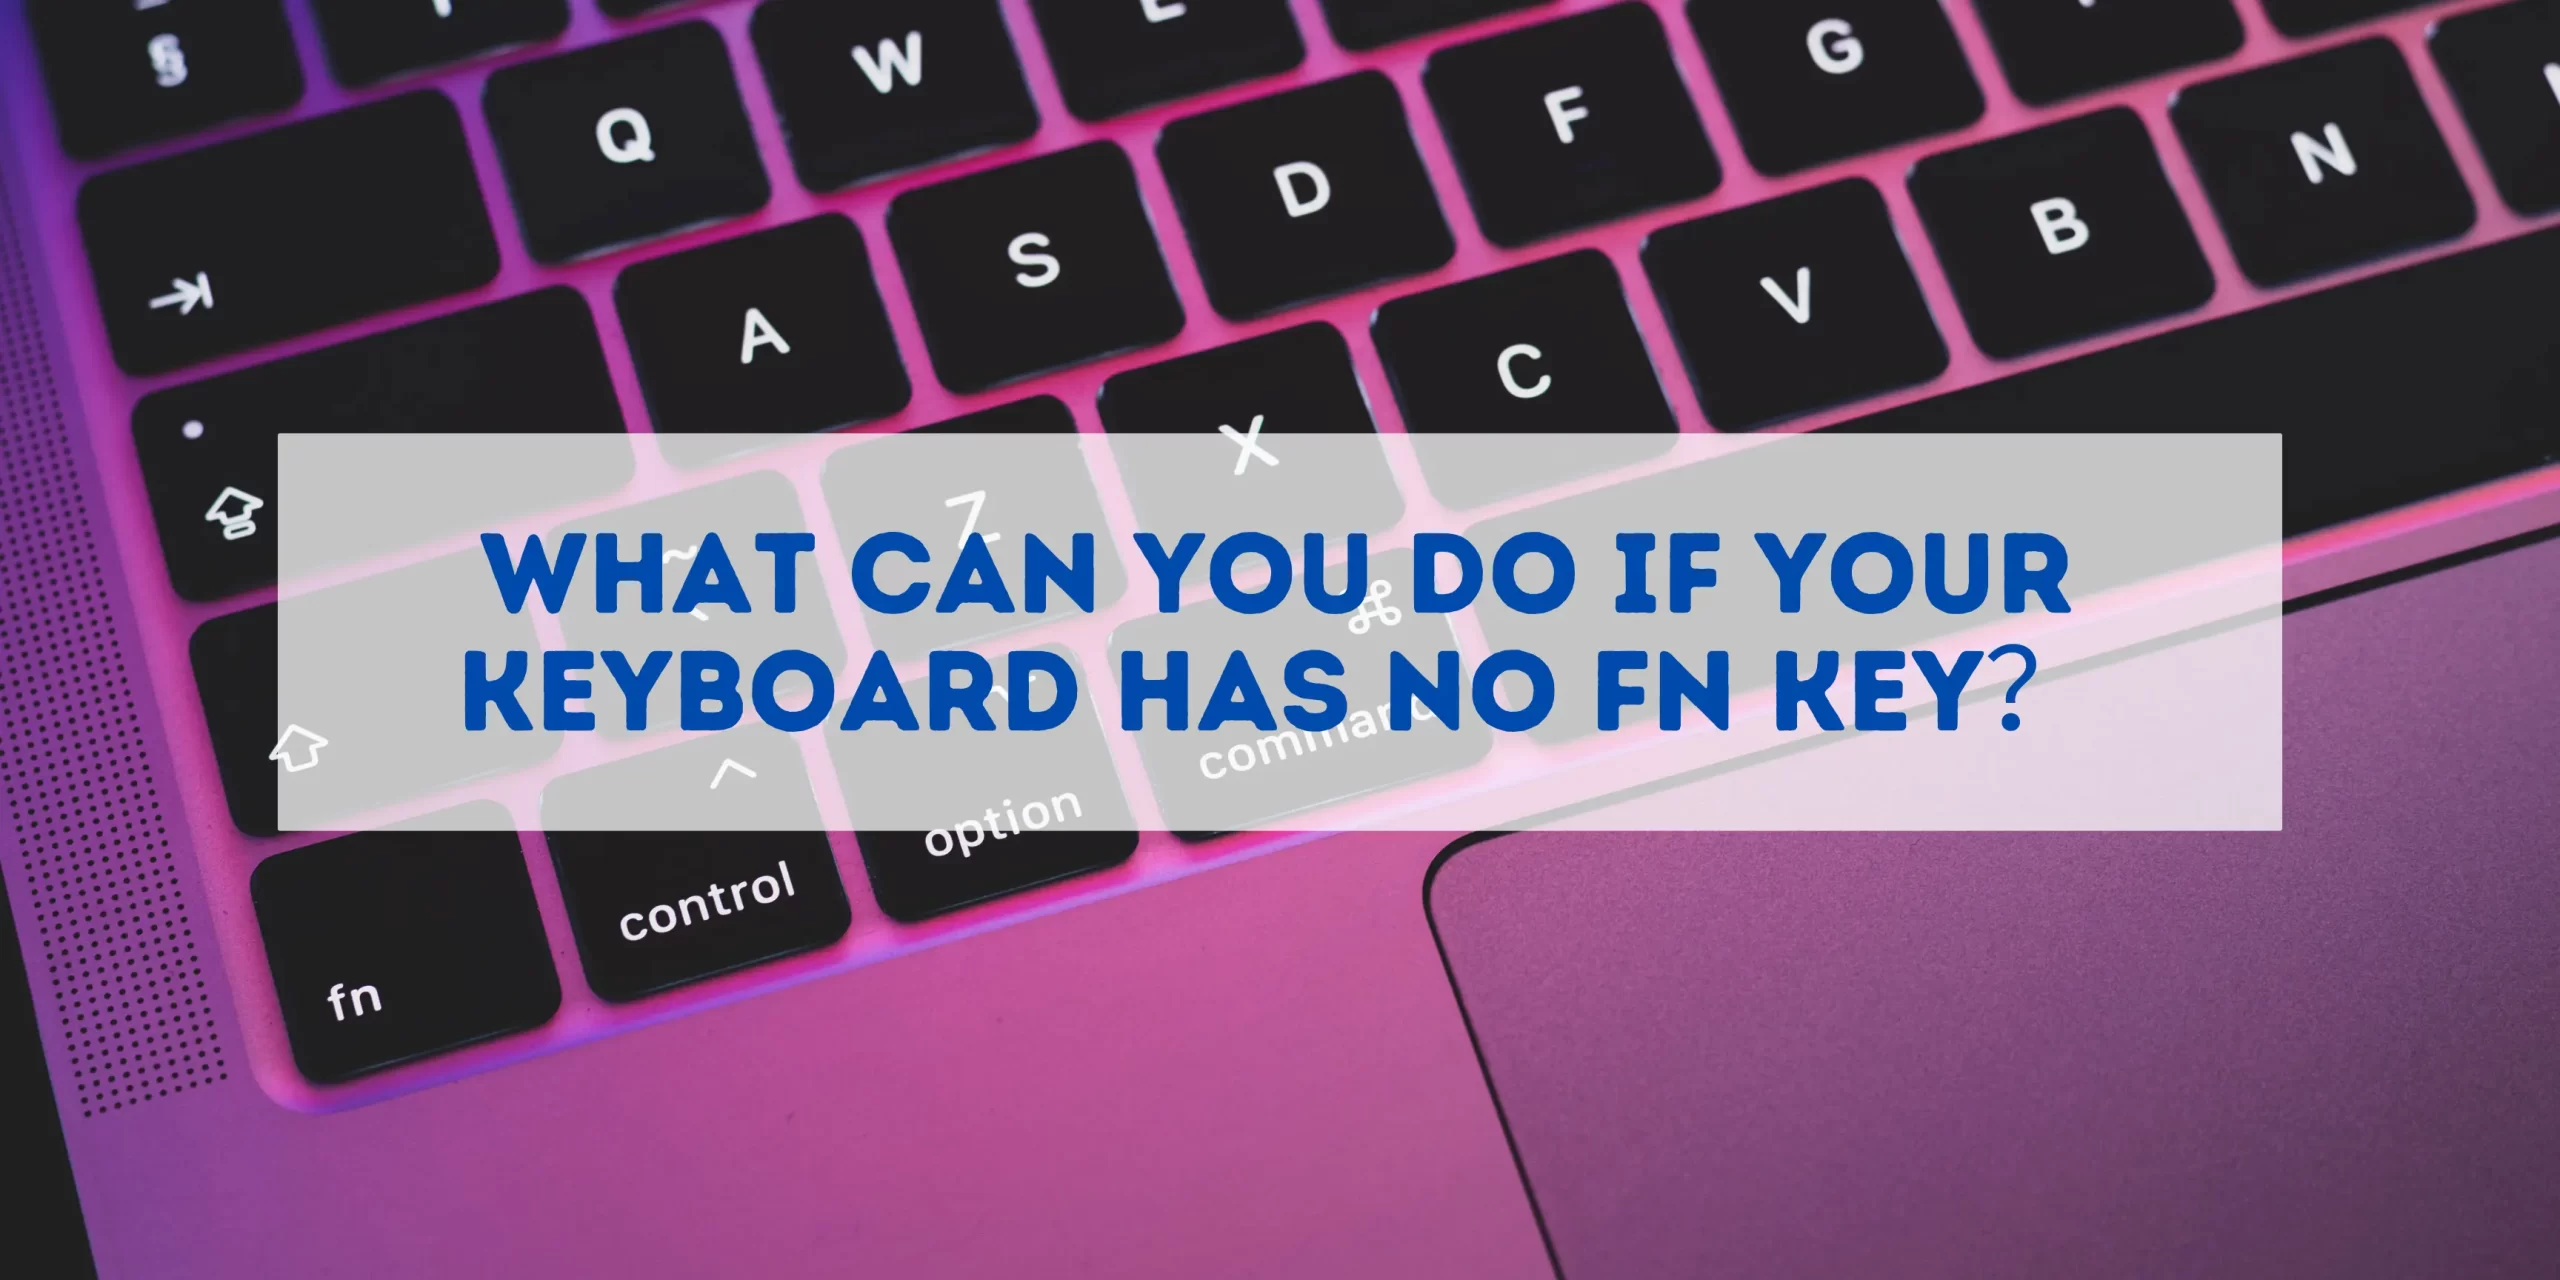 no fn key on keyboard